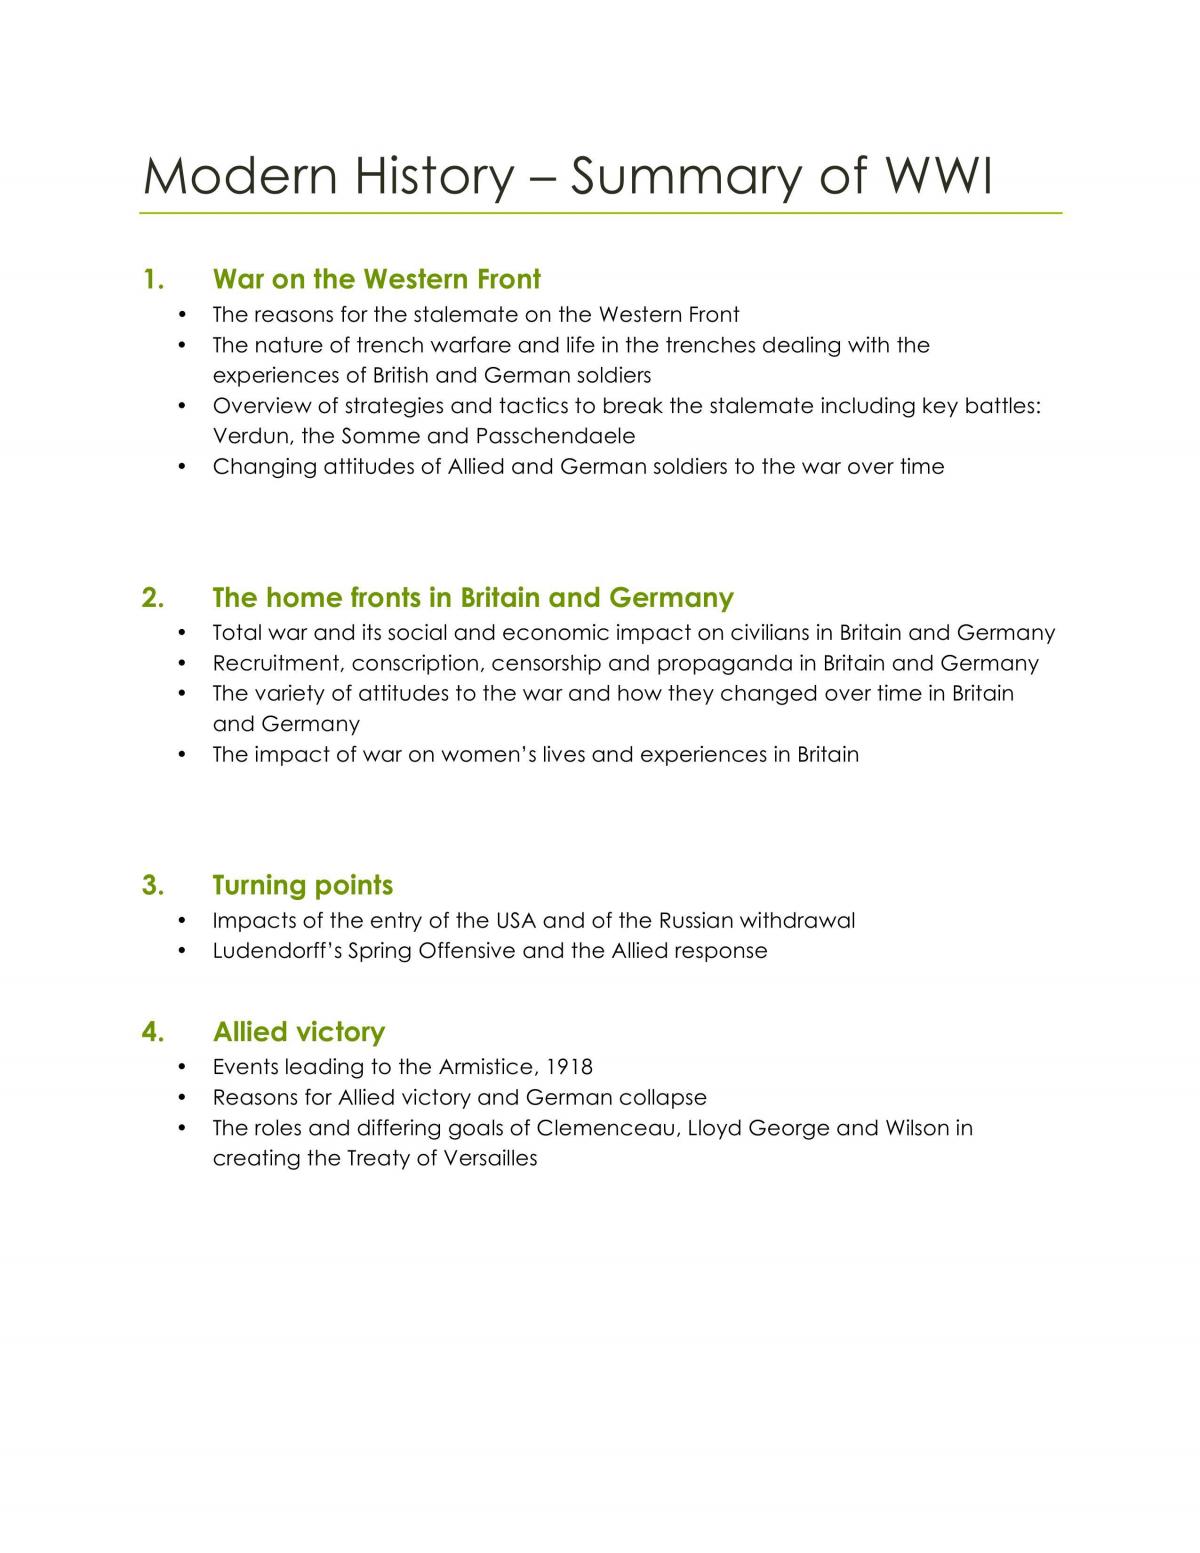 World War 1  - Page 1